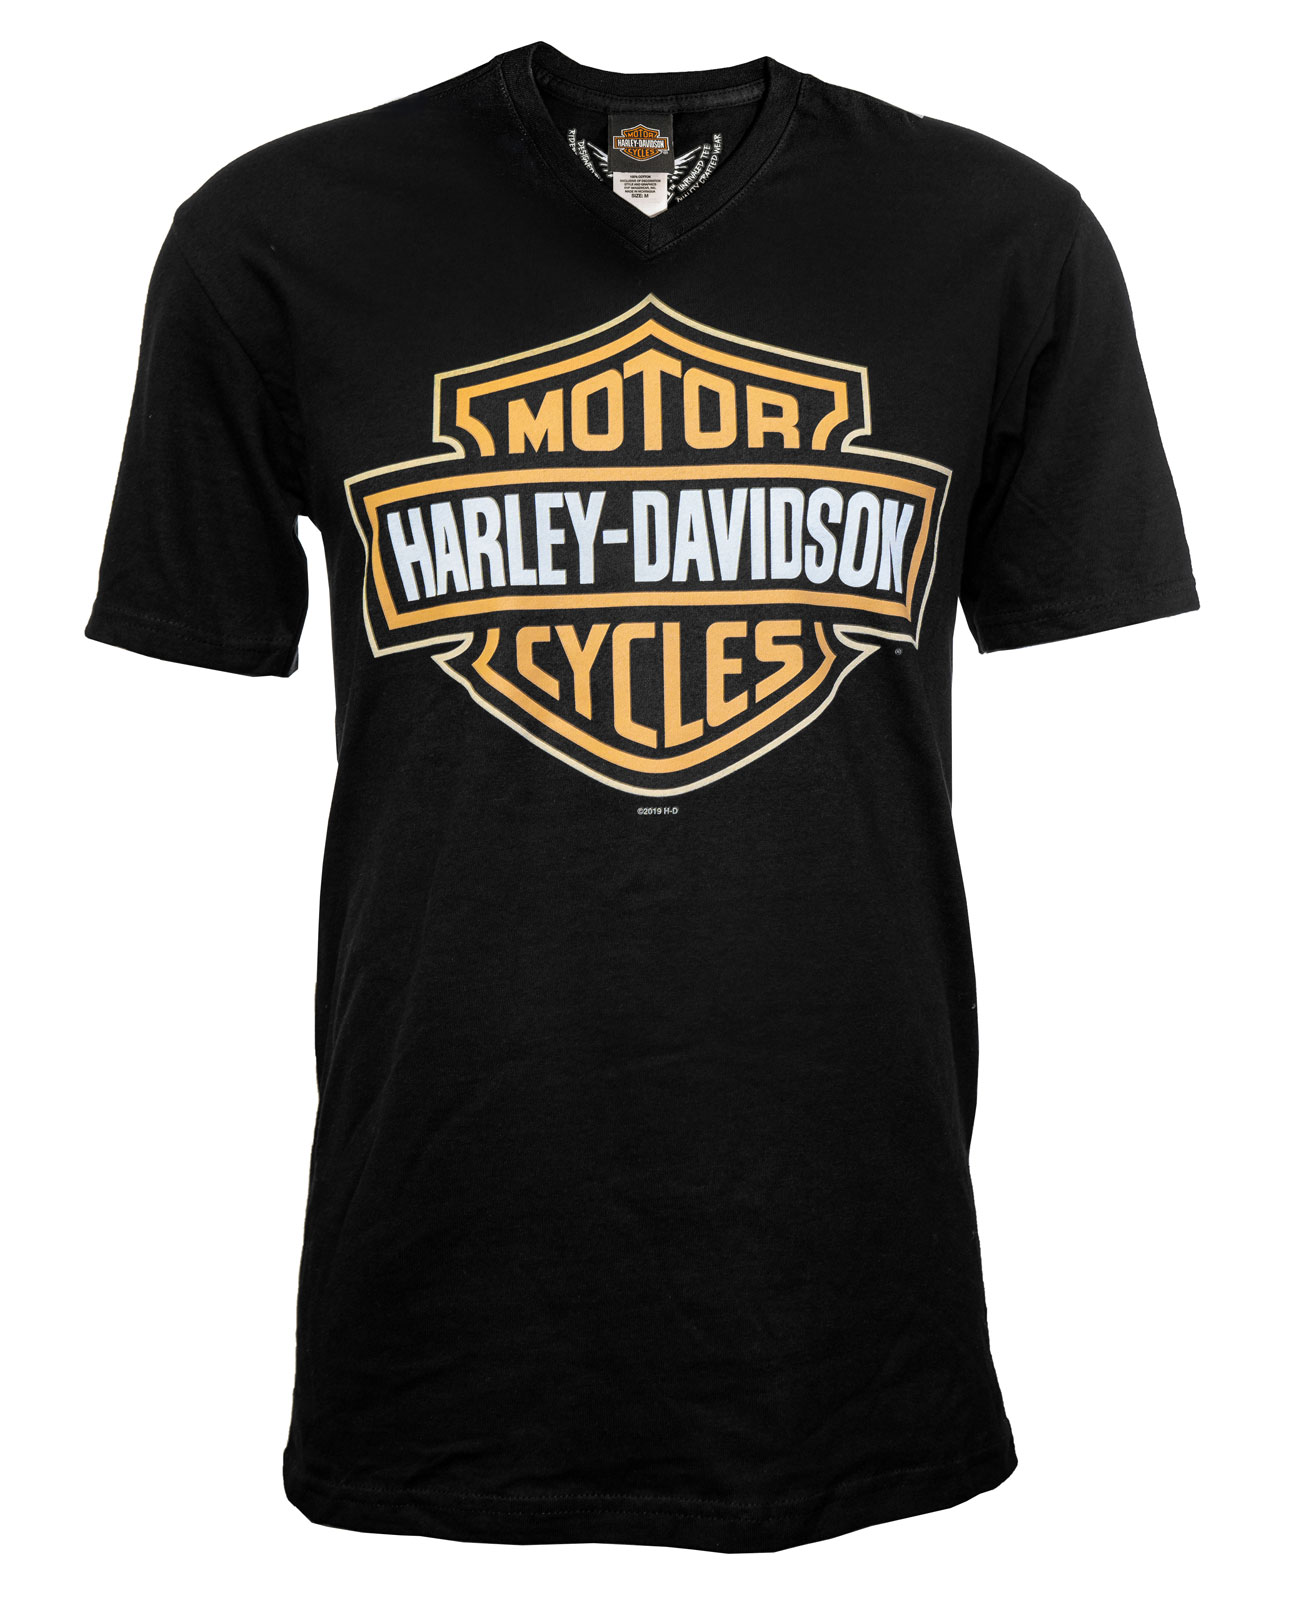 Harley Davidson T Promotion Off67